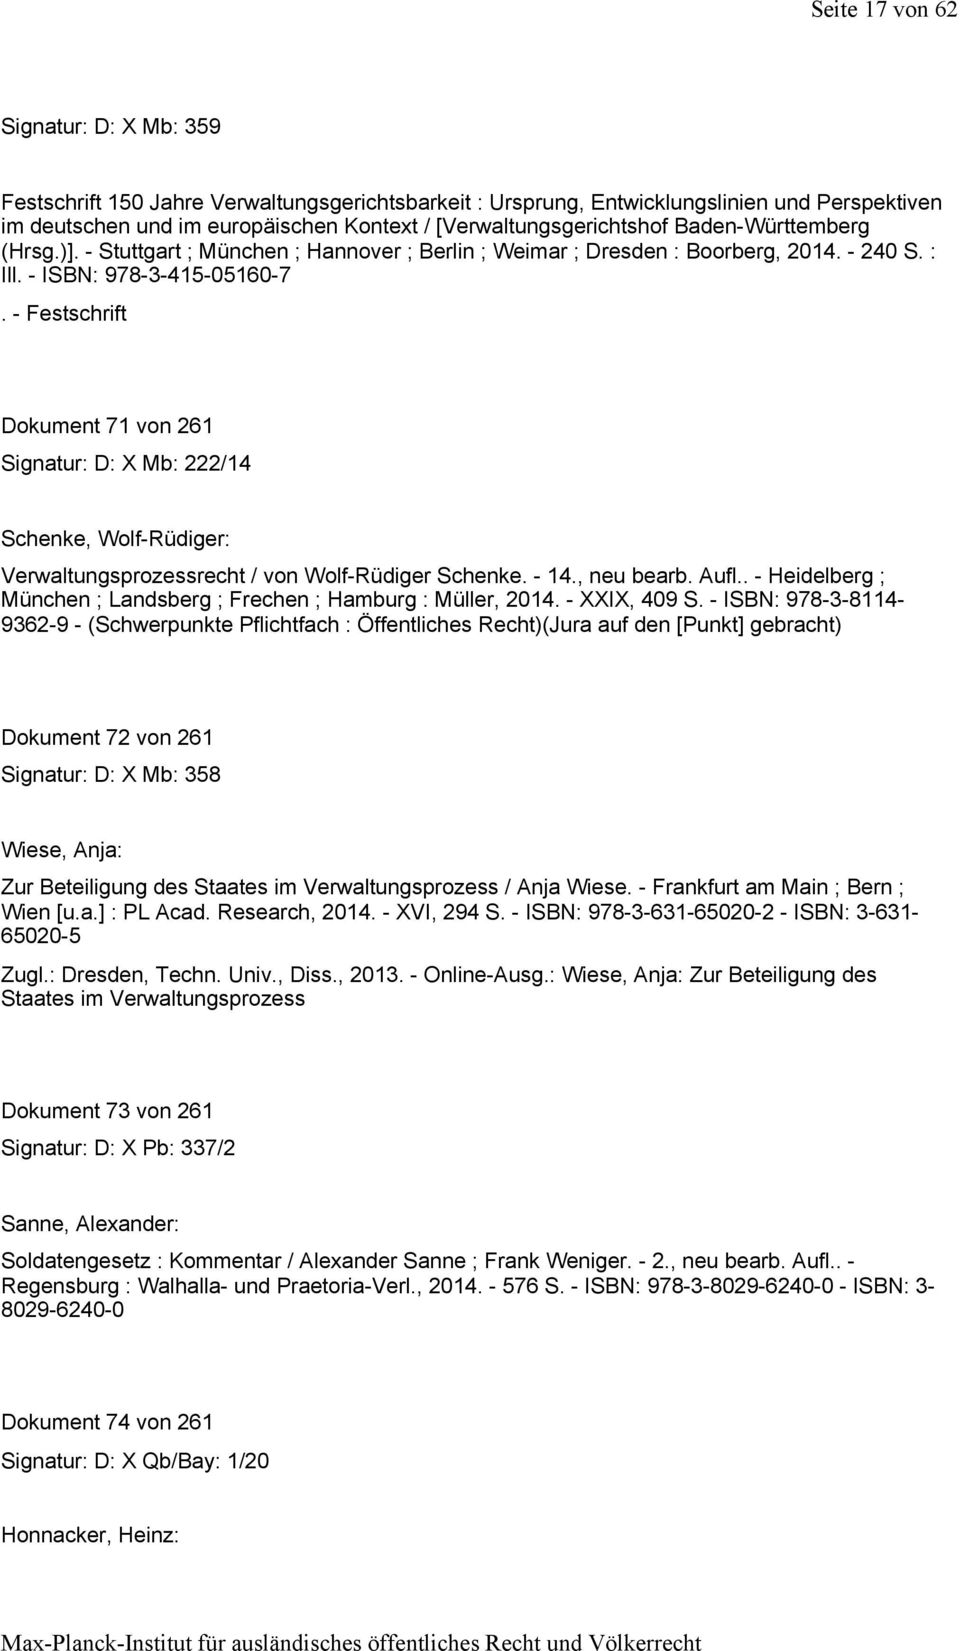 -Festschrift Dokument 71 von 261 Signatur: D: X Mb: 222/14 Schenke, Wolf-Rüdiger: Verwaltungsprozessrecht / von Wolf-Rüdiger Schenke. -14., neu bearb. Aufl.